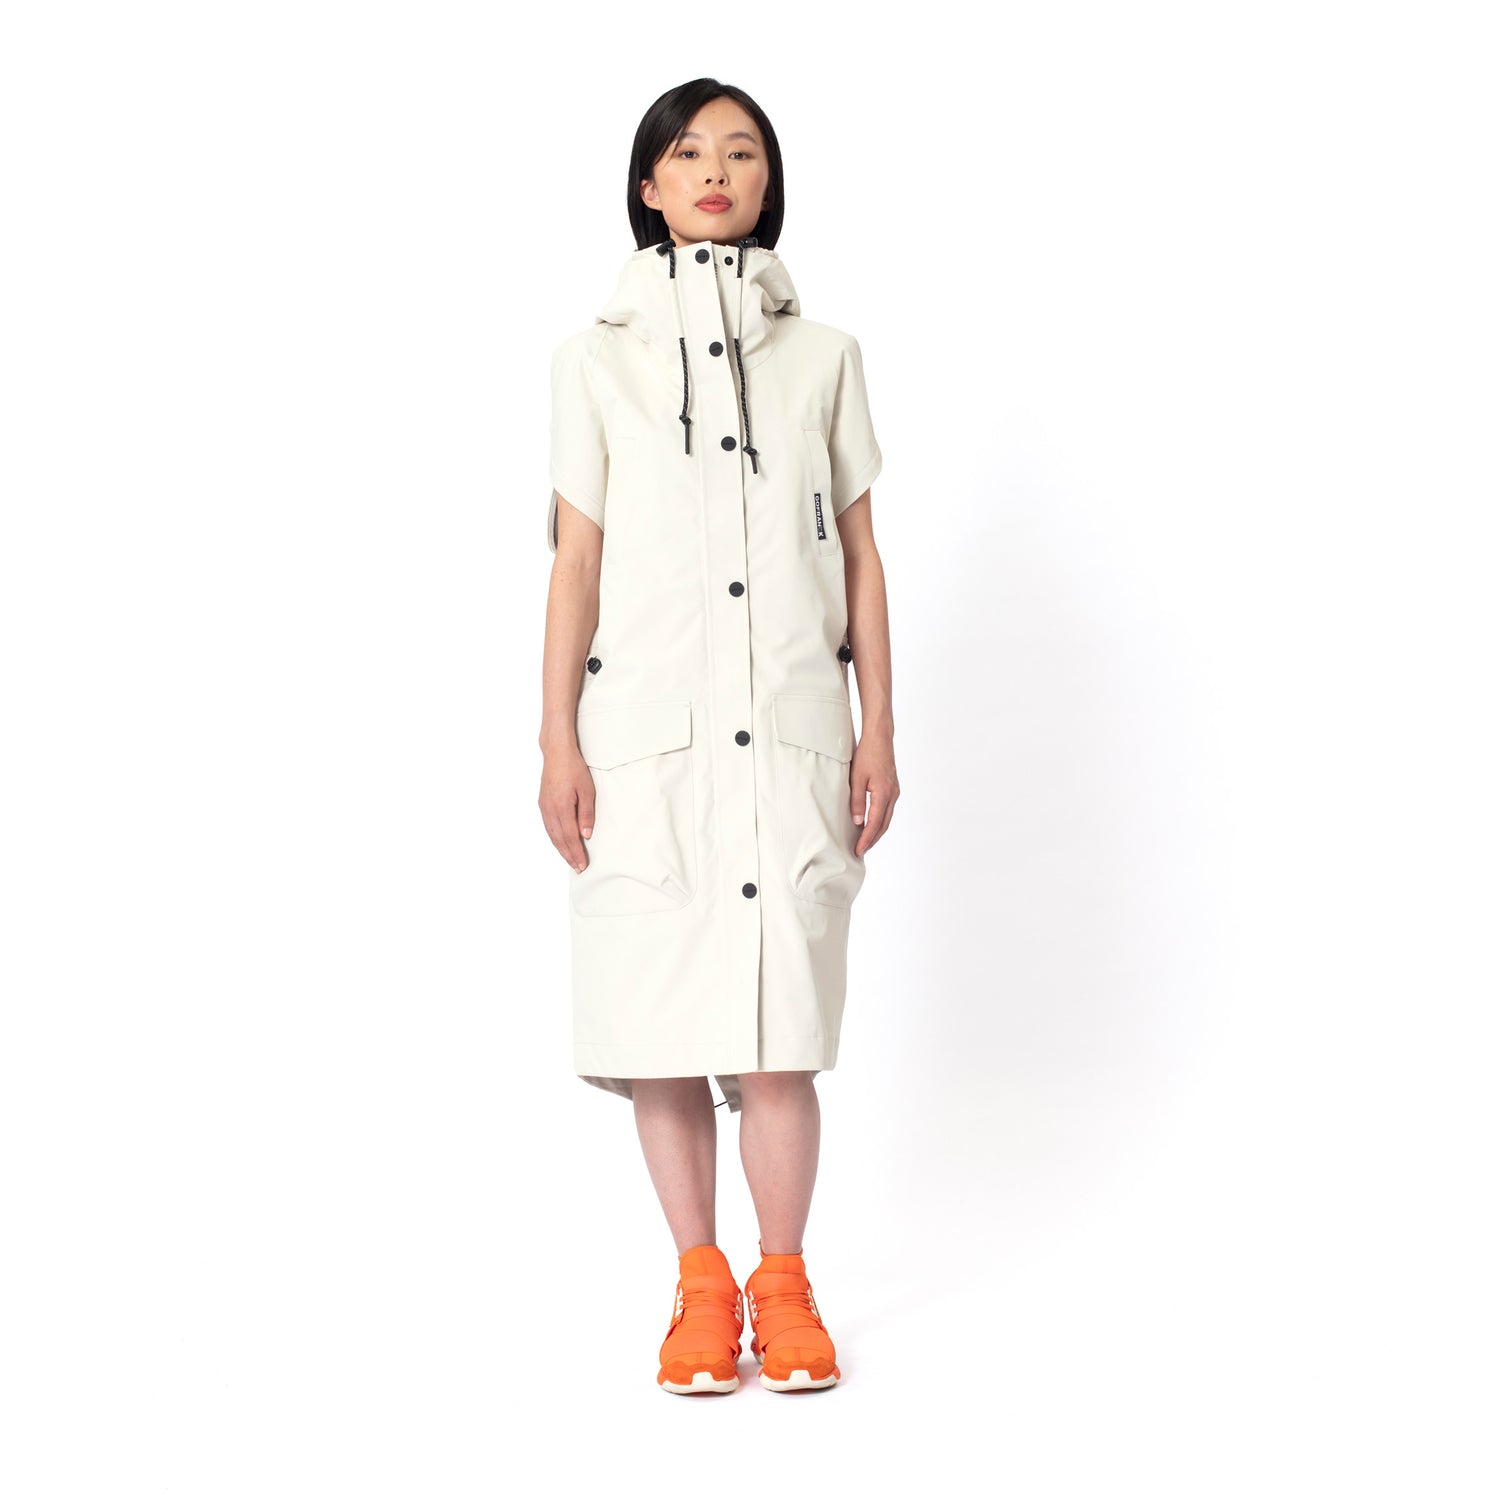 GOFRANCK-HOT-SUMMER-Product-Image-women-rainjacket